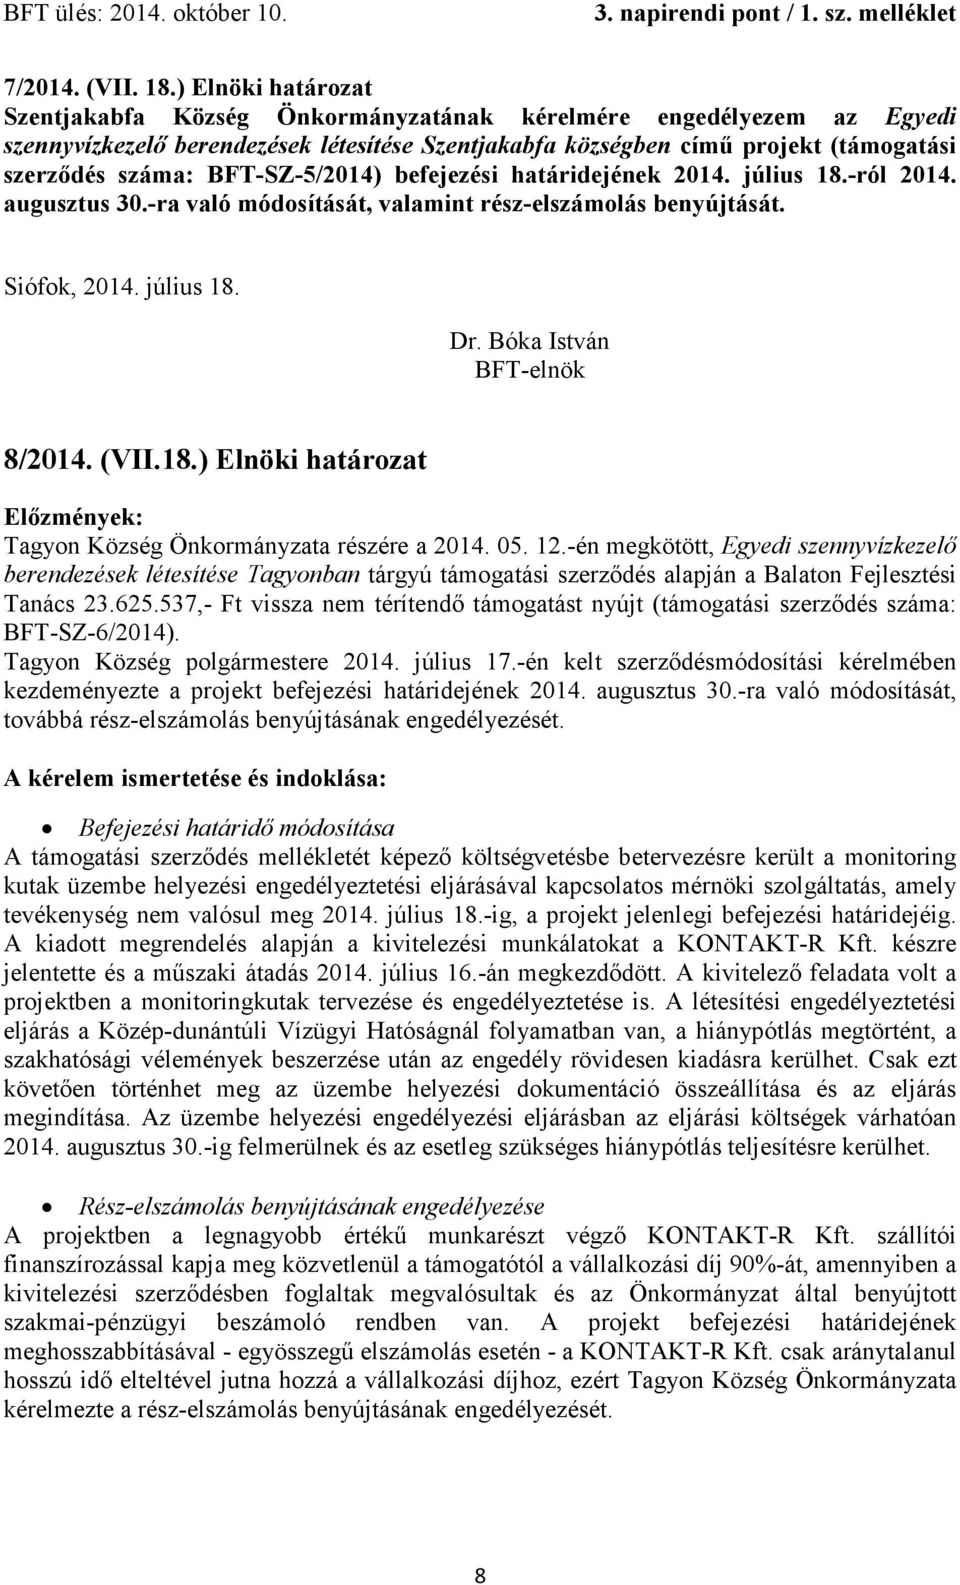 BFT-SZ-5/2014) befejezési határidejének 2014. július 18.-ról 2014. augusztus 30.-ra való módosítását, valamint rész-elszámolás benyújtását. Siófok, 2014. július 18. BFT-elnök 8/2014. (VII.18.) Elnöki határozat Tagyon Község Önkormányzata részére a 2014.